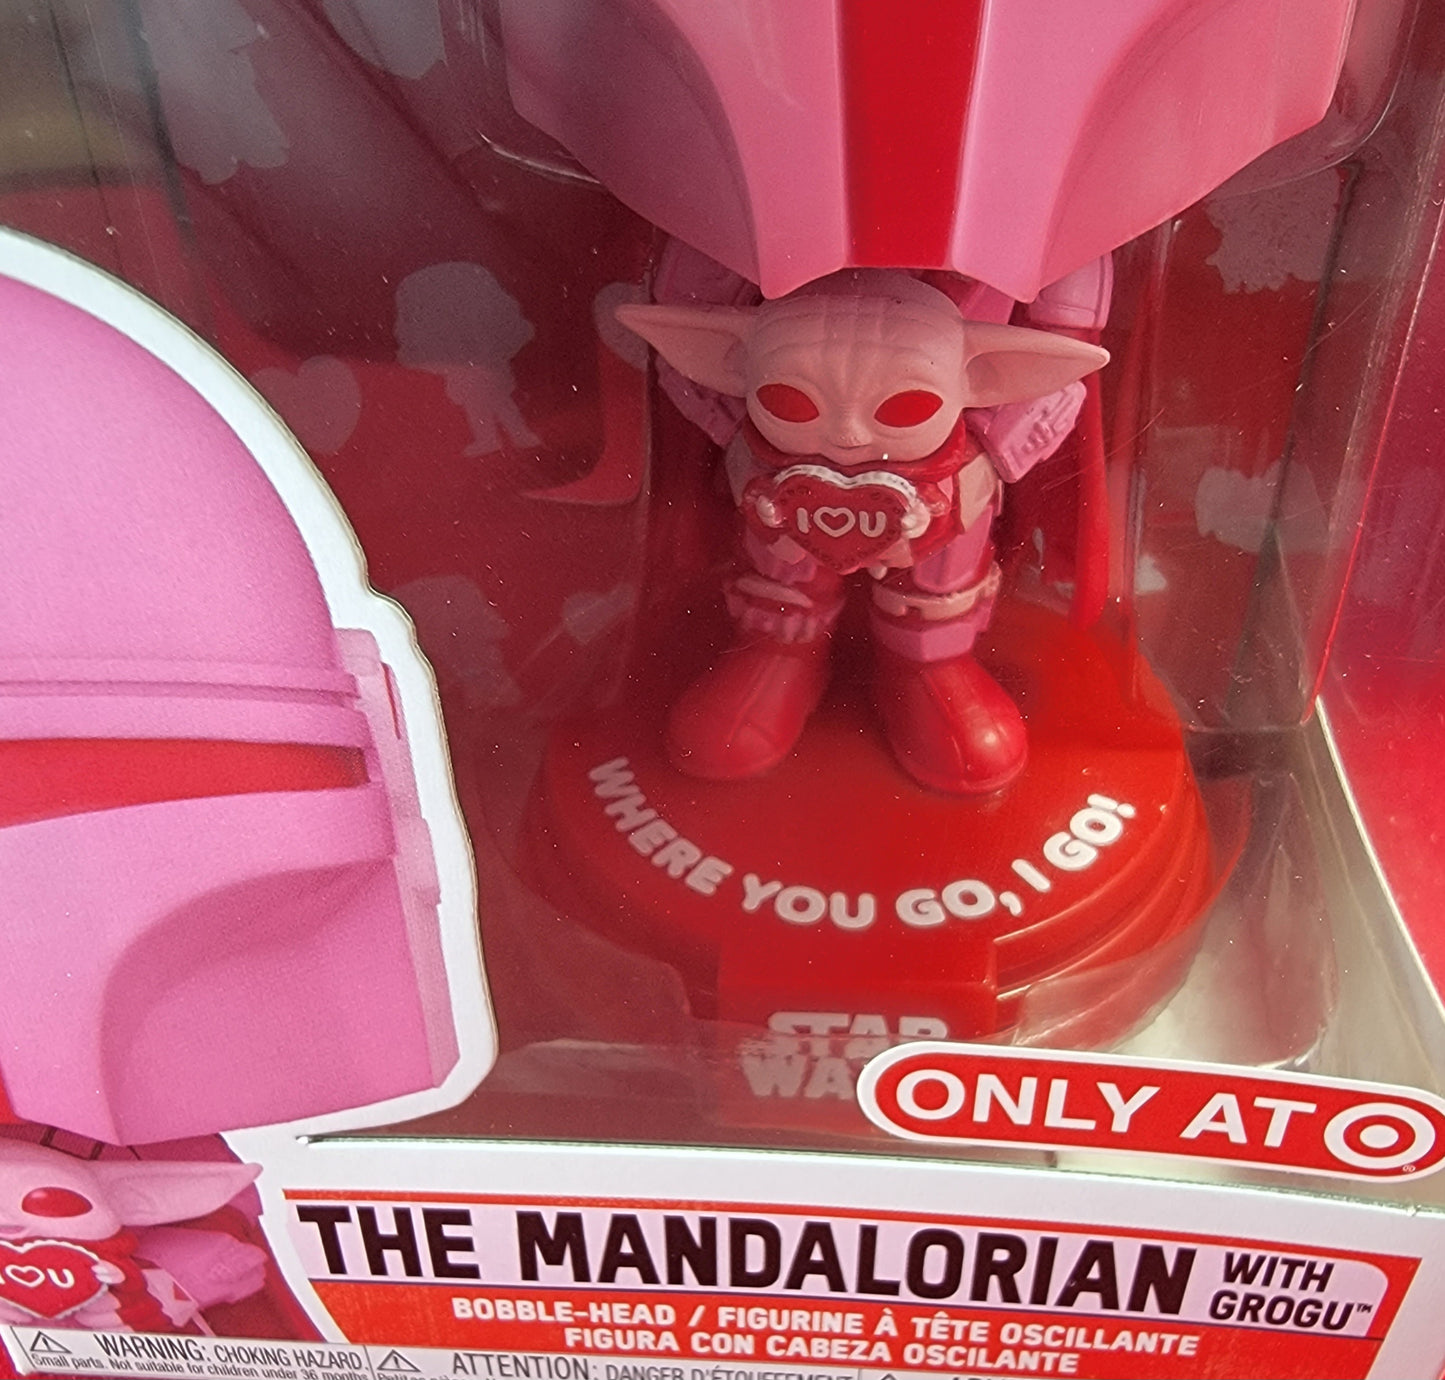 The mandalorian with grogu target exclusive funko # 498 (nib)